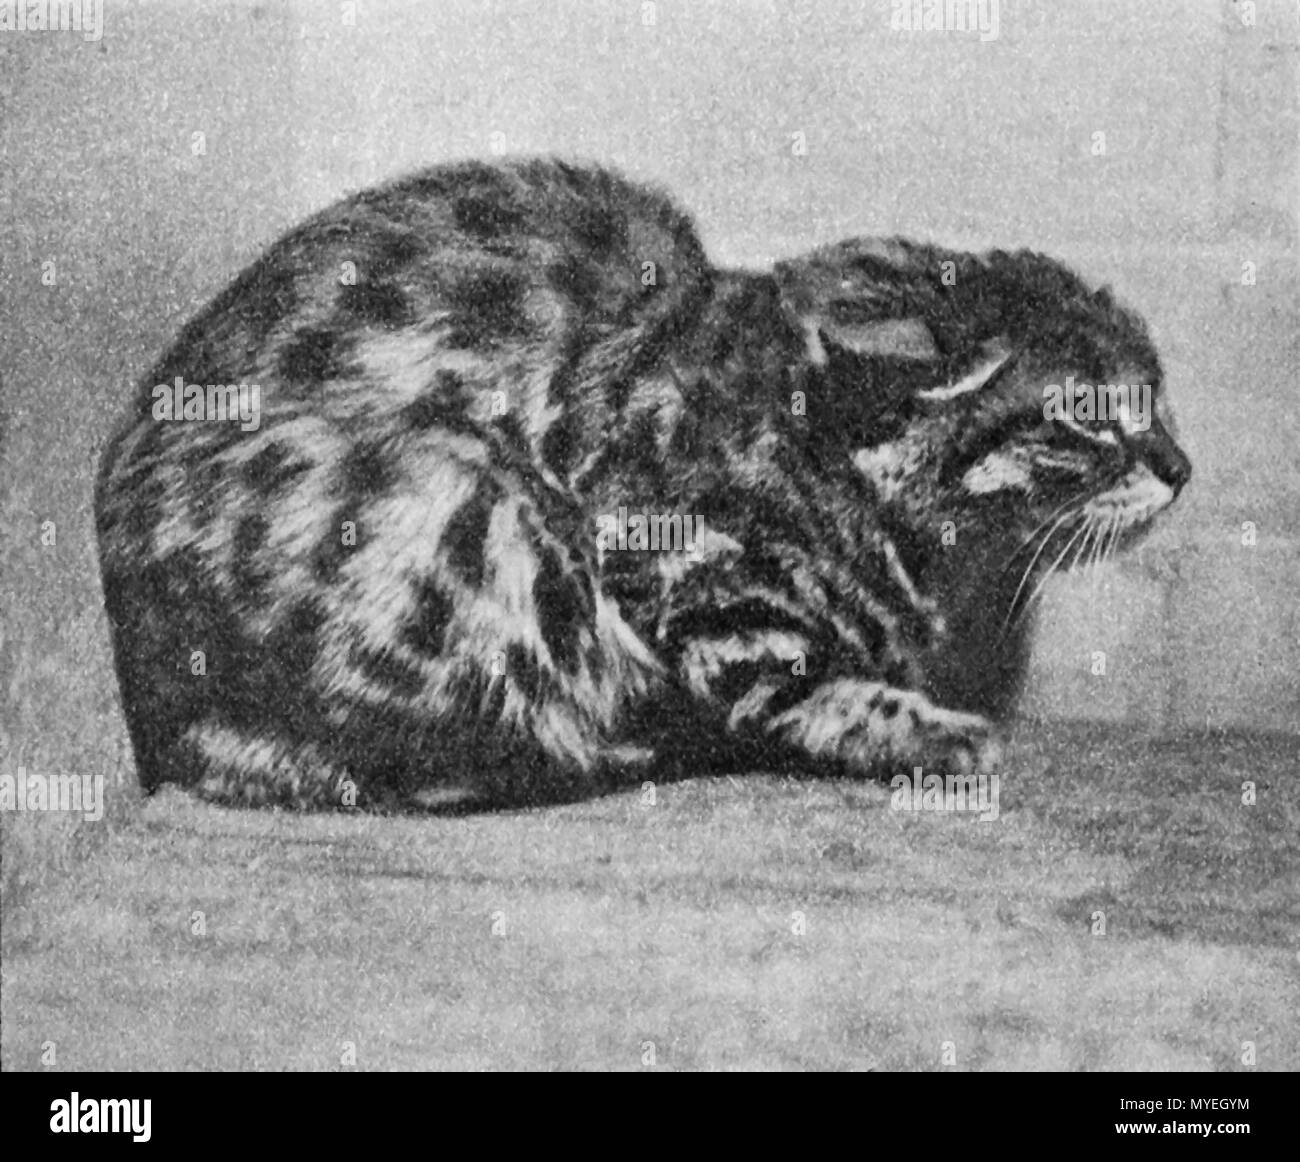 . English : Chat à pieds noirs au zoo de Londres (provenant probablement de l'est de l'Afrique du Sud). Été 1906 ou 1907 Anglais : Black-footed Cat (probablement de l'Est de l'Afrique du Sud) dans le Zoo de Londres, l'été 1906 ou 1907. 15 juin 2013, 10:51:18. R.I.Pocock (texte) 176 FelisNigripesZoo Banque D'Images